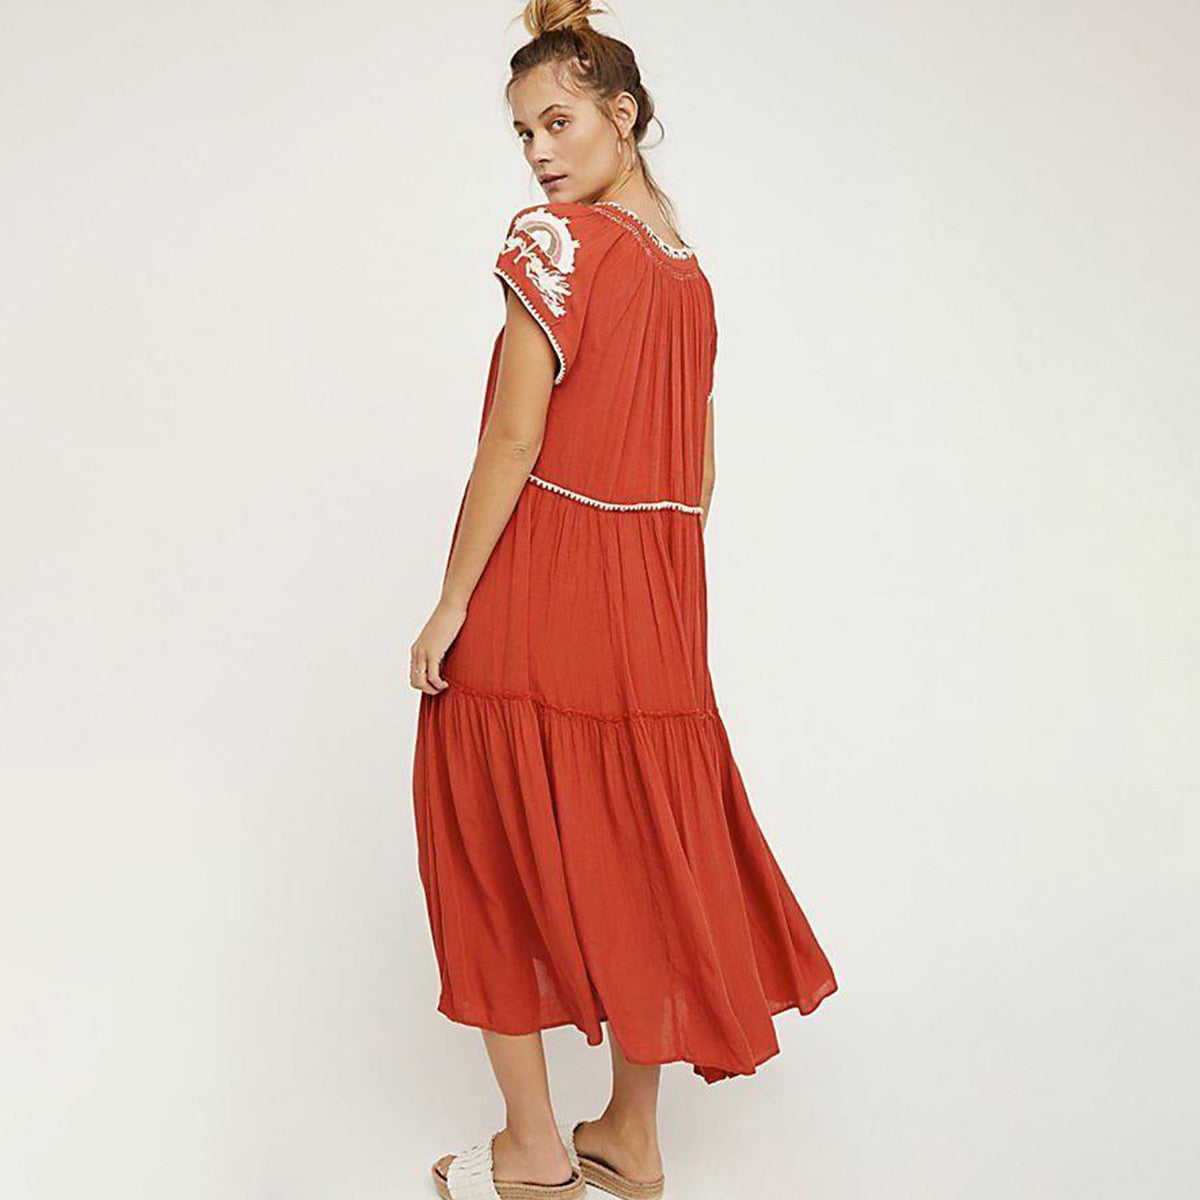 ديزي فيلدز بوهو فستان ماكسي المرأة كم طويل الخامس الرقبة الدانتيل يصل فساتين مثيرة السيدات الأحمر التطريز الغجر الهبي فستان طويل 2020